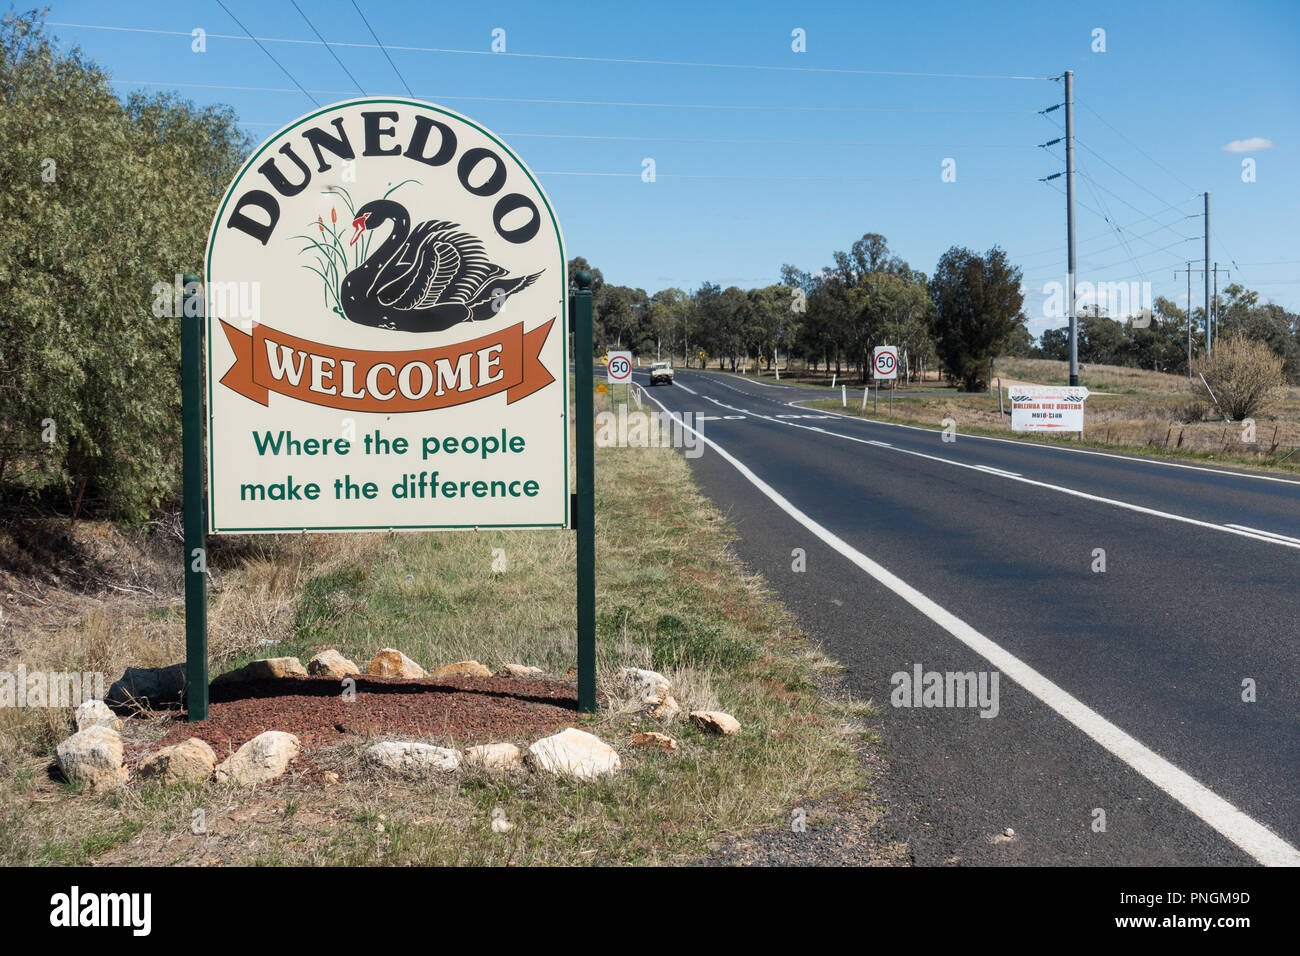 Le panneau de la commune sur l'autoroute pour Dunedoo Castlereagh NSW Australie doté d'un cygne noir. Banque D'Images